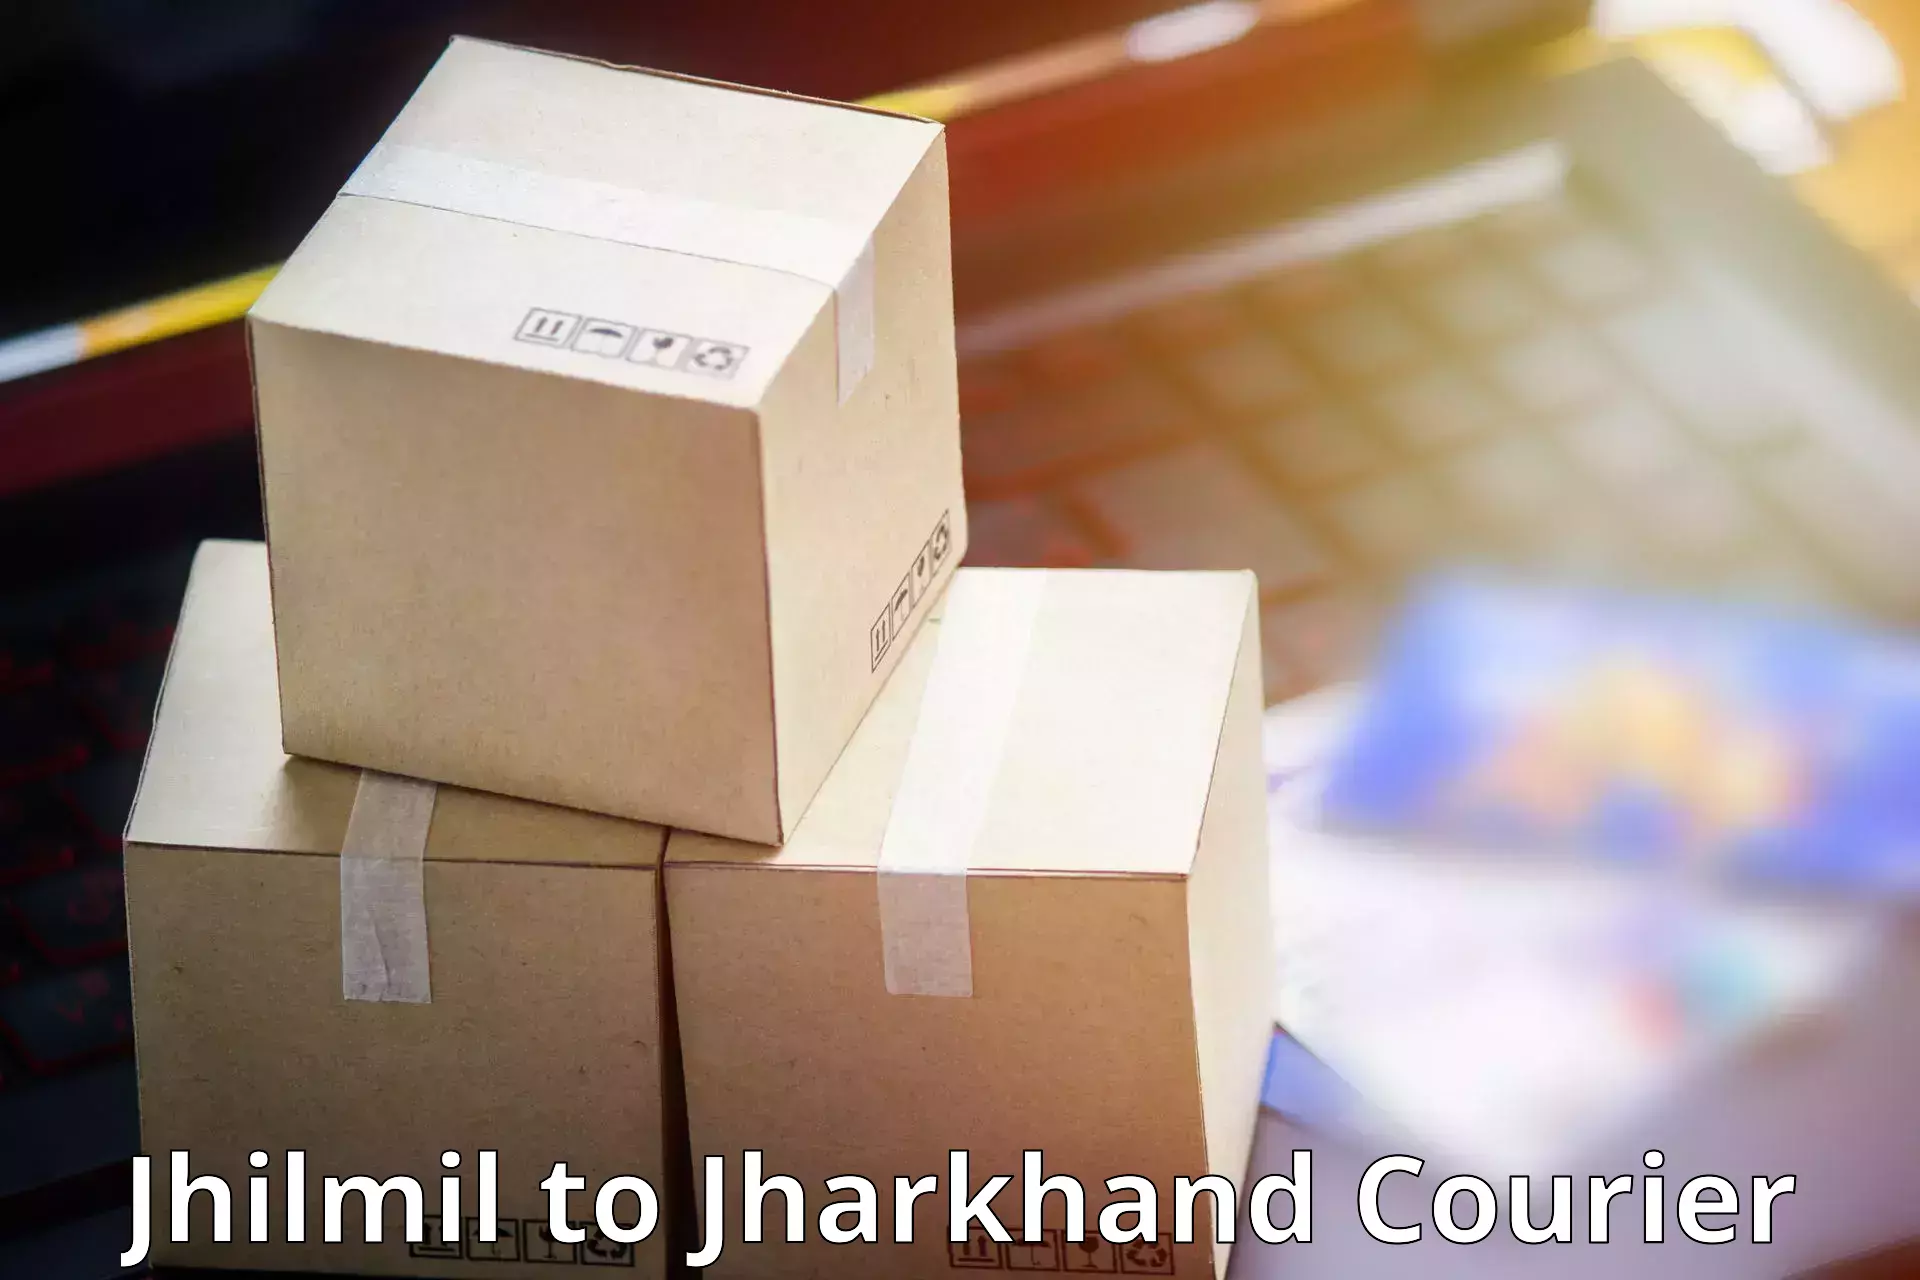 Efficient parcel service Jhilmil to Jagannathpur